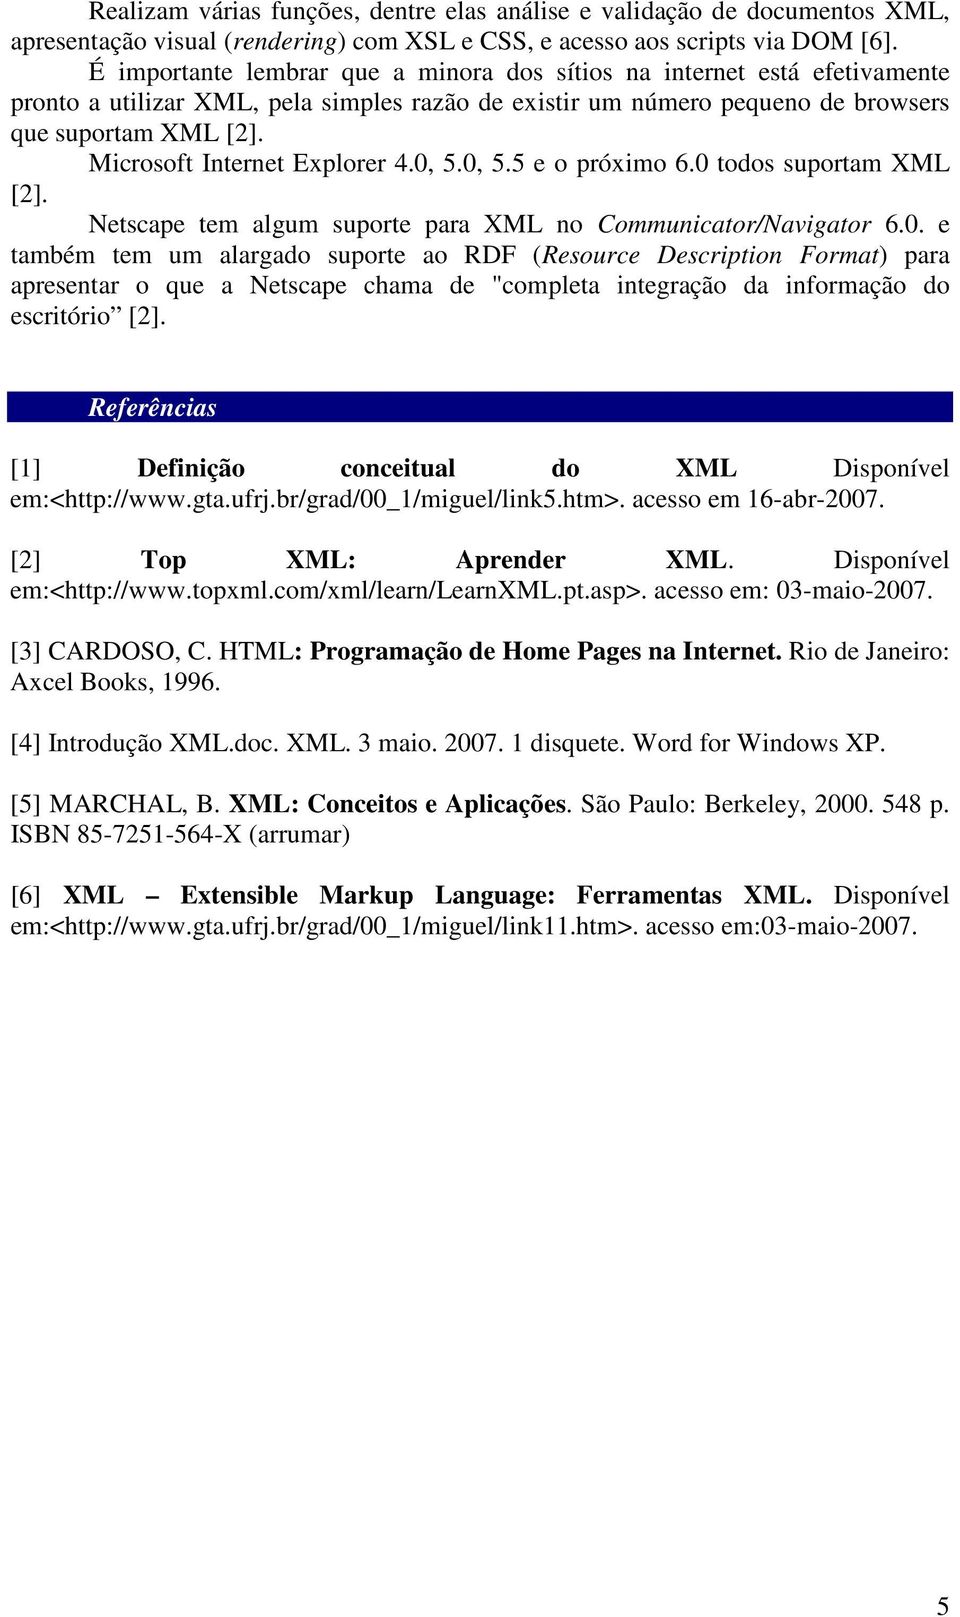 Microsoft Internet Explorer 4.0, 5.0, 5.5 e o próximo 6.0 todos suportam XML [2]. Netscape tem algum suporte para XML no Communicator/Navigator 6.0. e também tem um alargado suporte ao RDF (Resource Description Format) para apresentar o que a Netscape chama de "completa integração da informação do escritório [2].